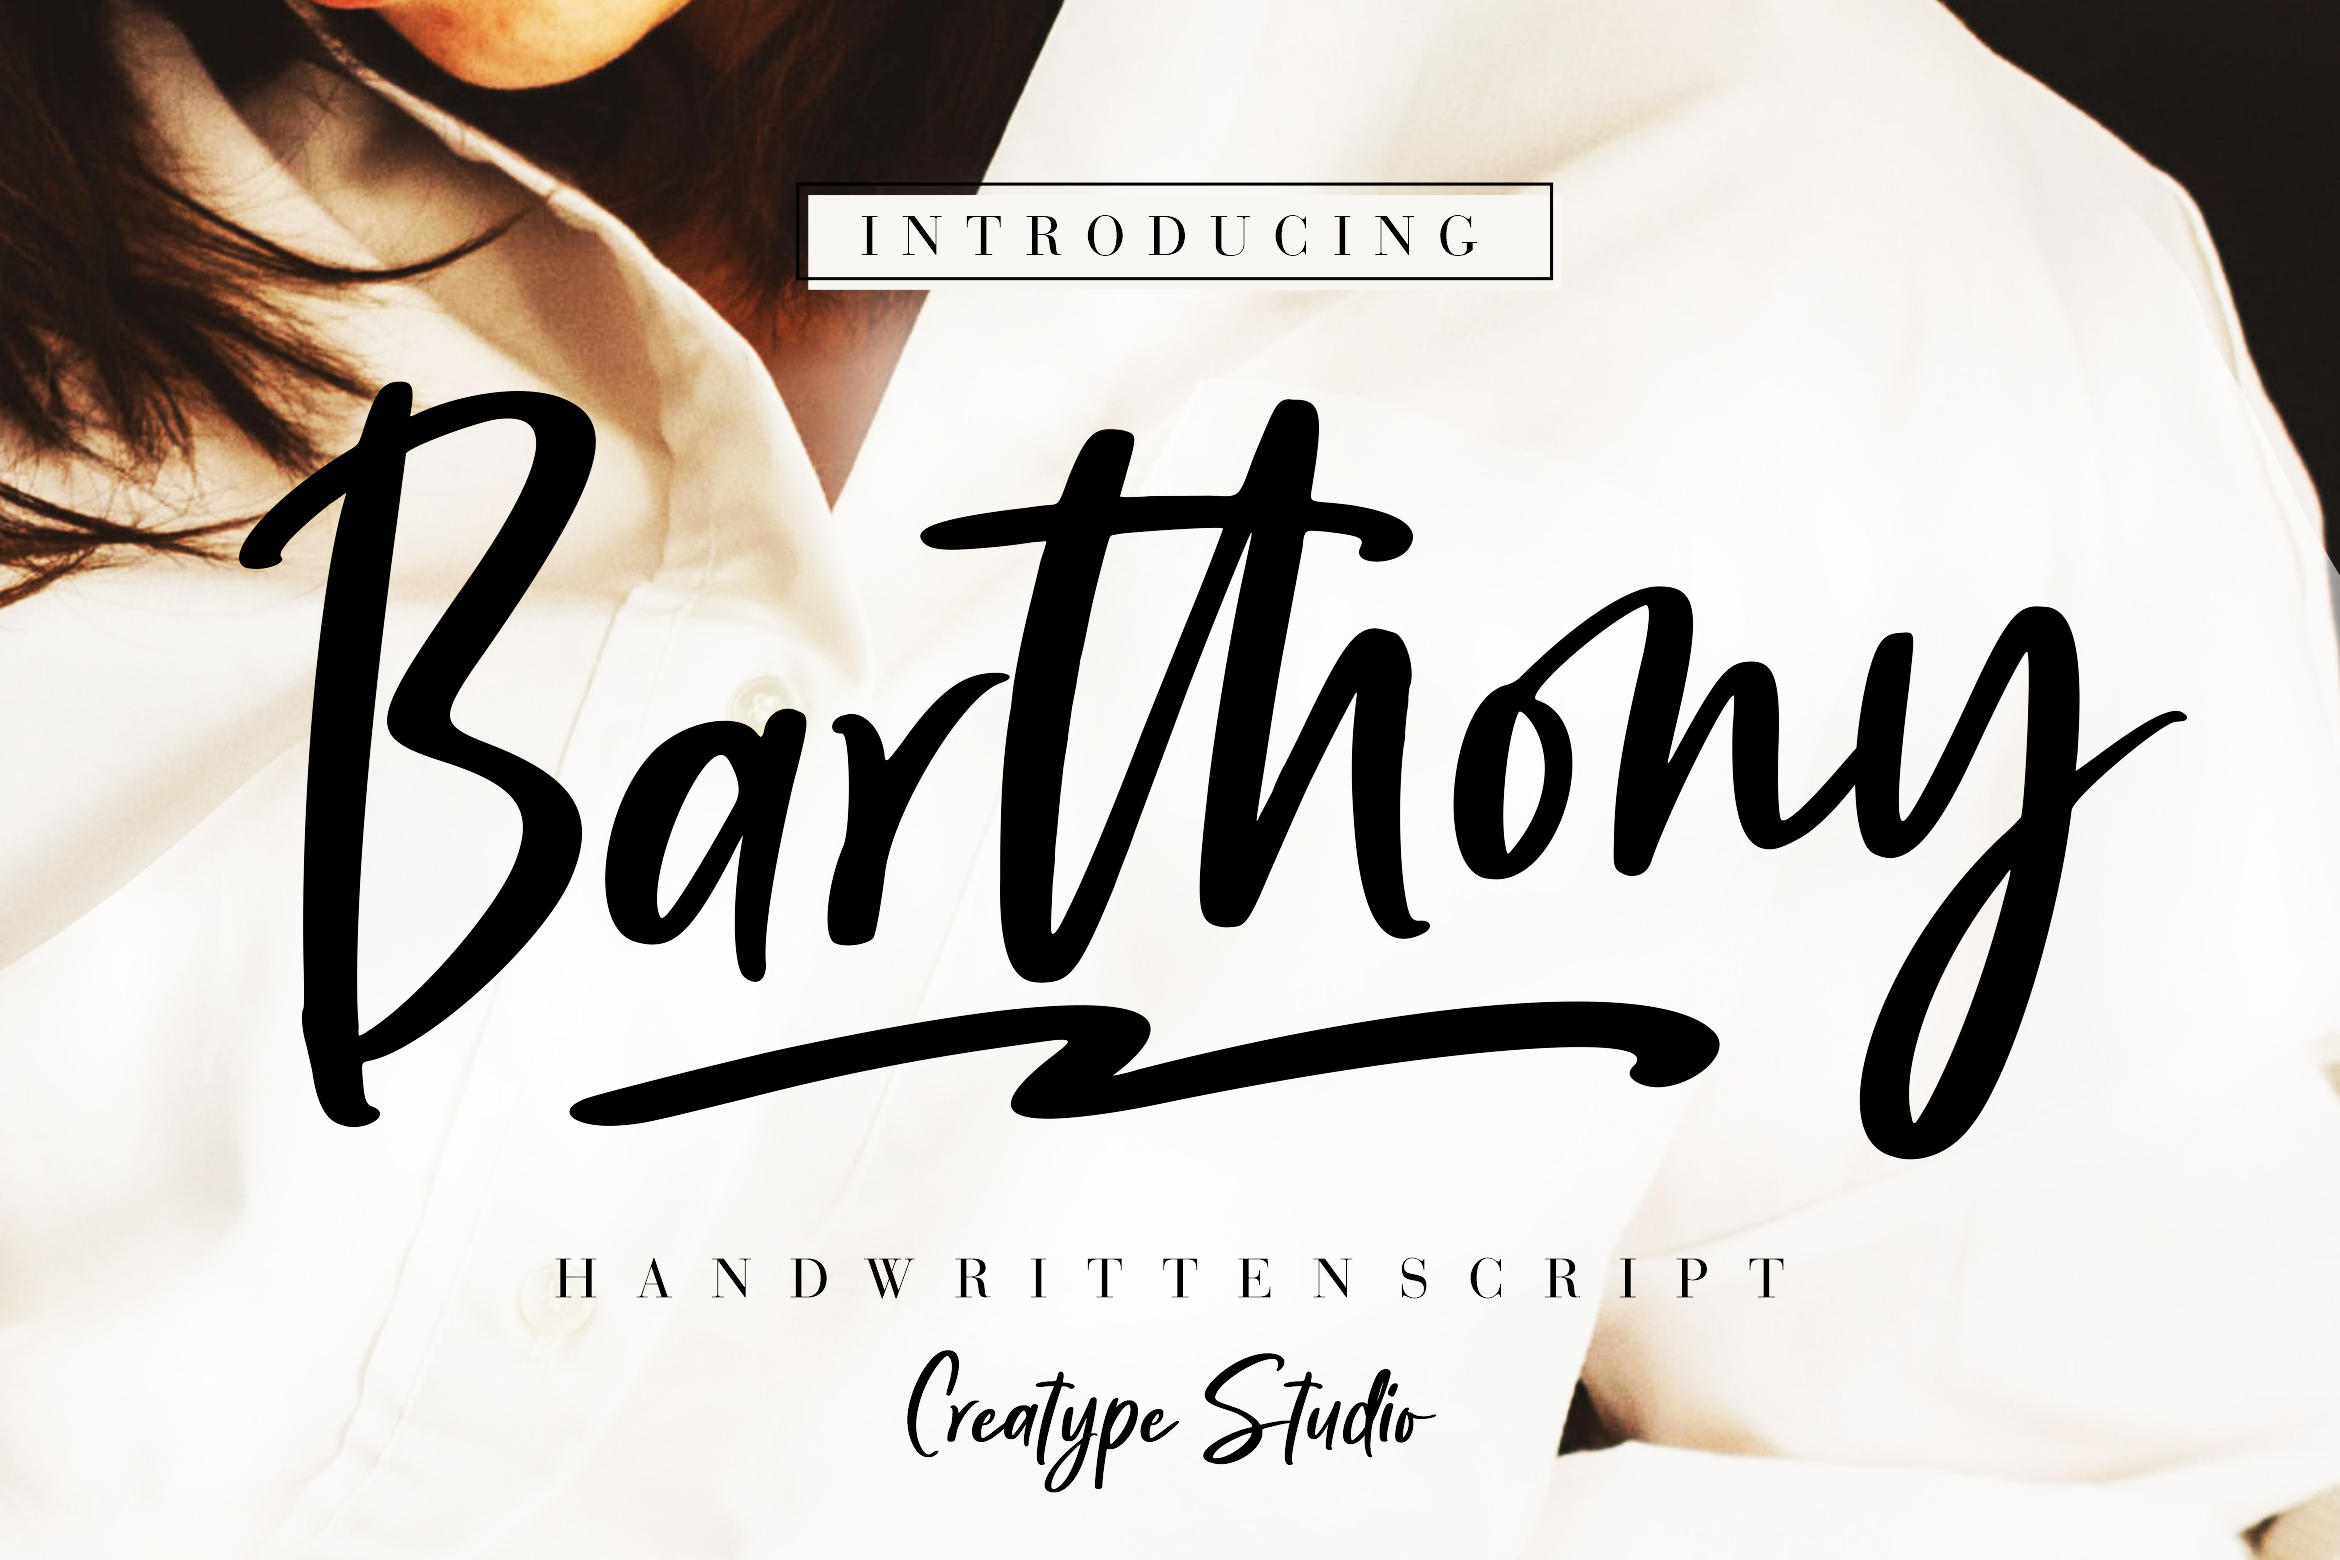 Barthony